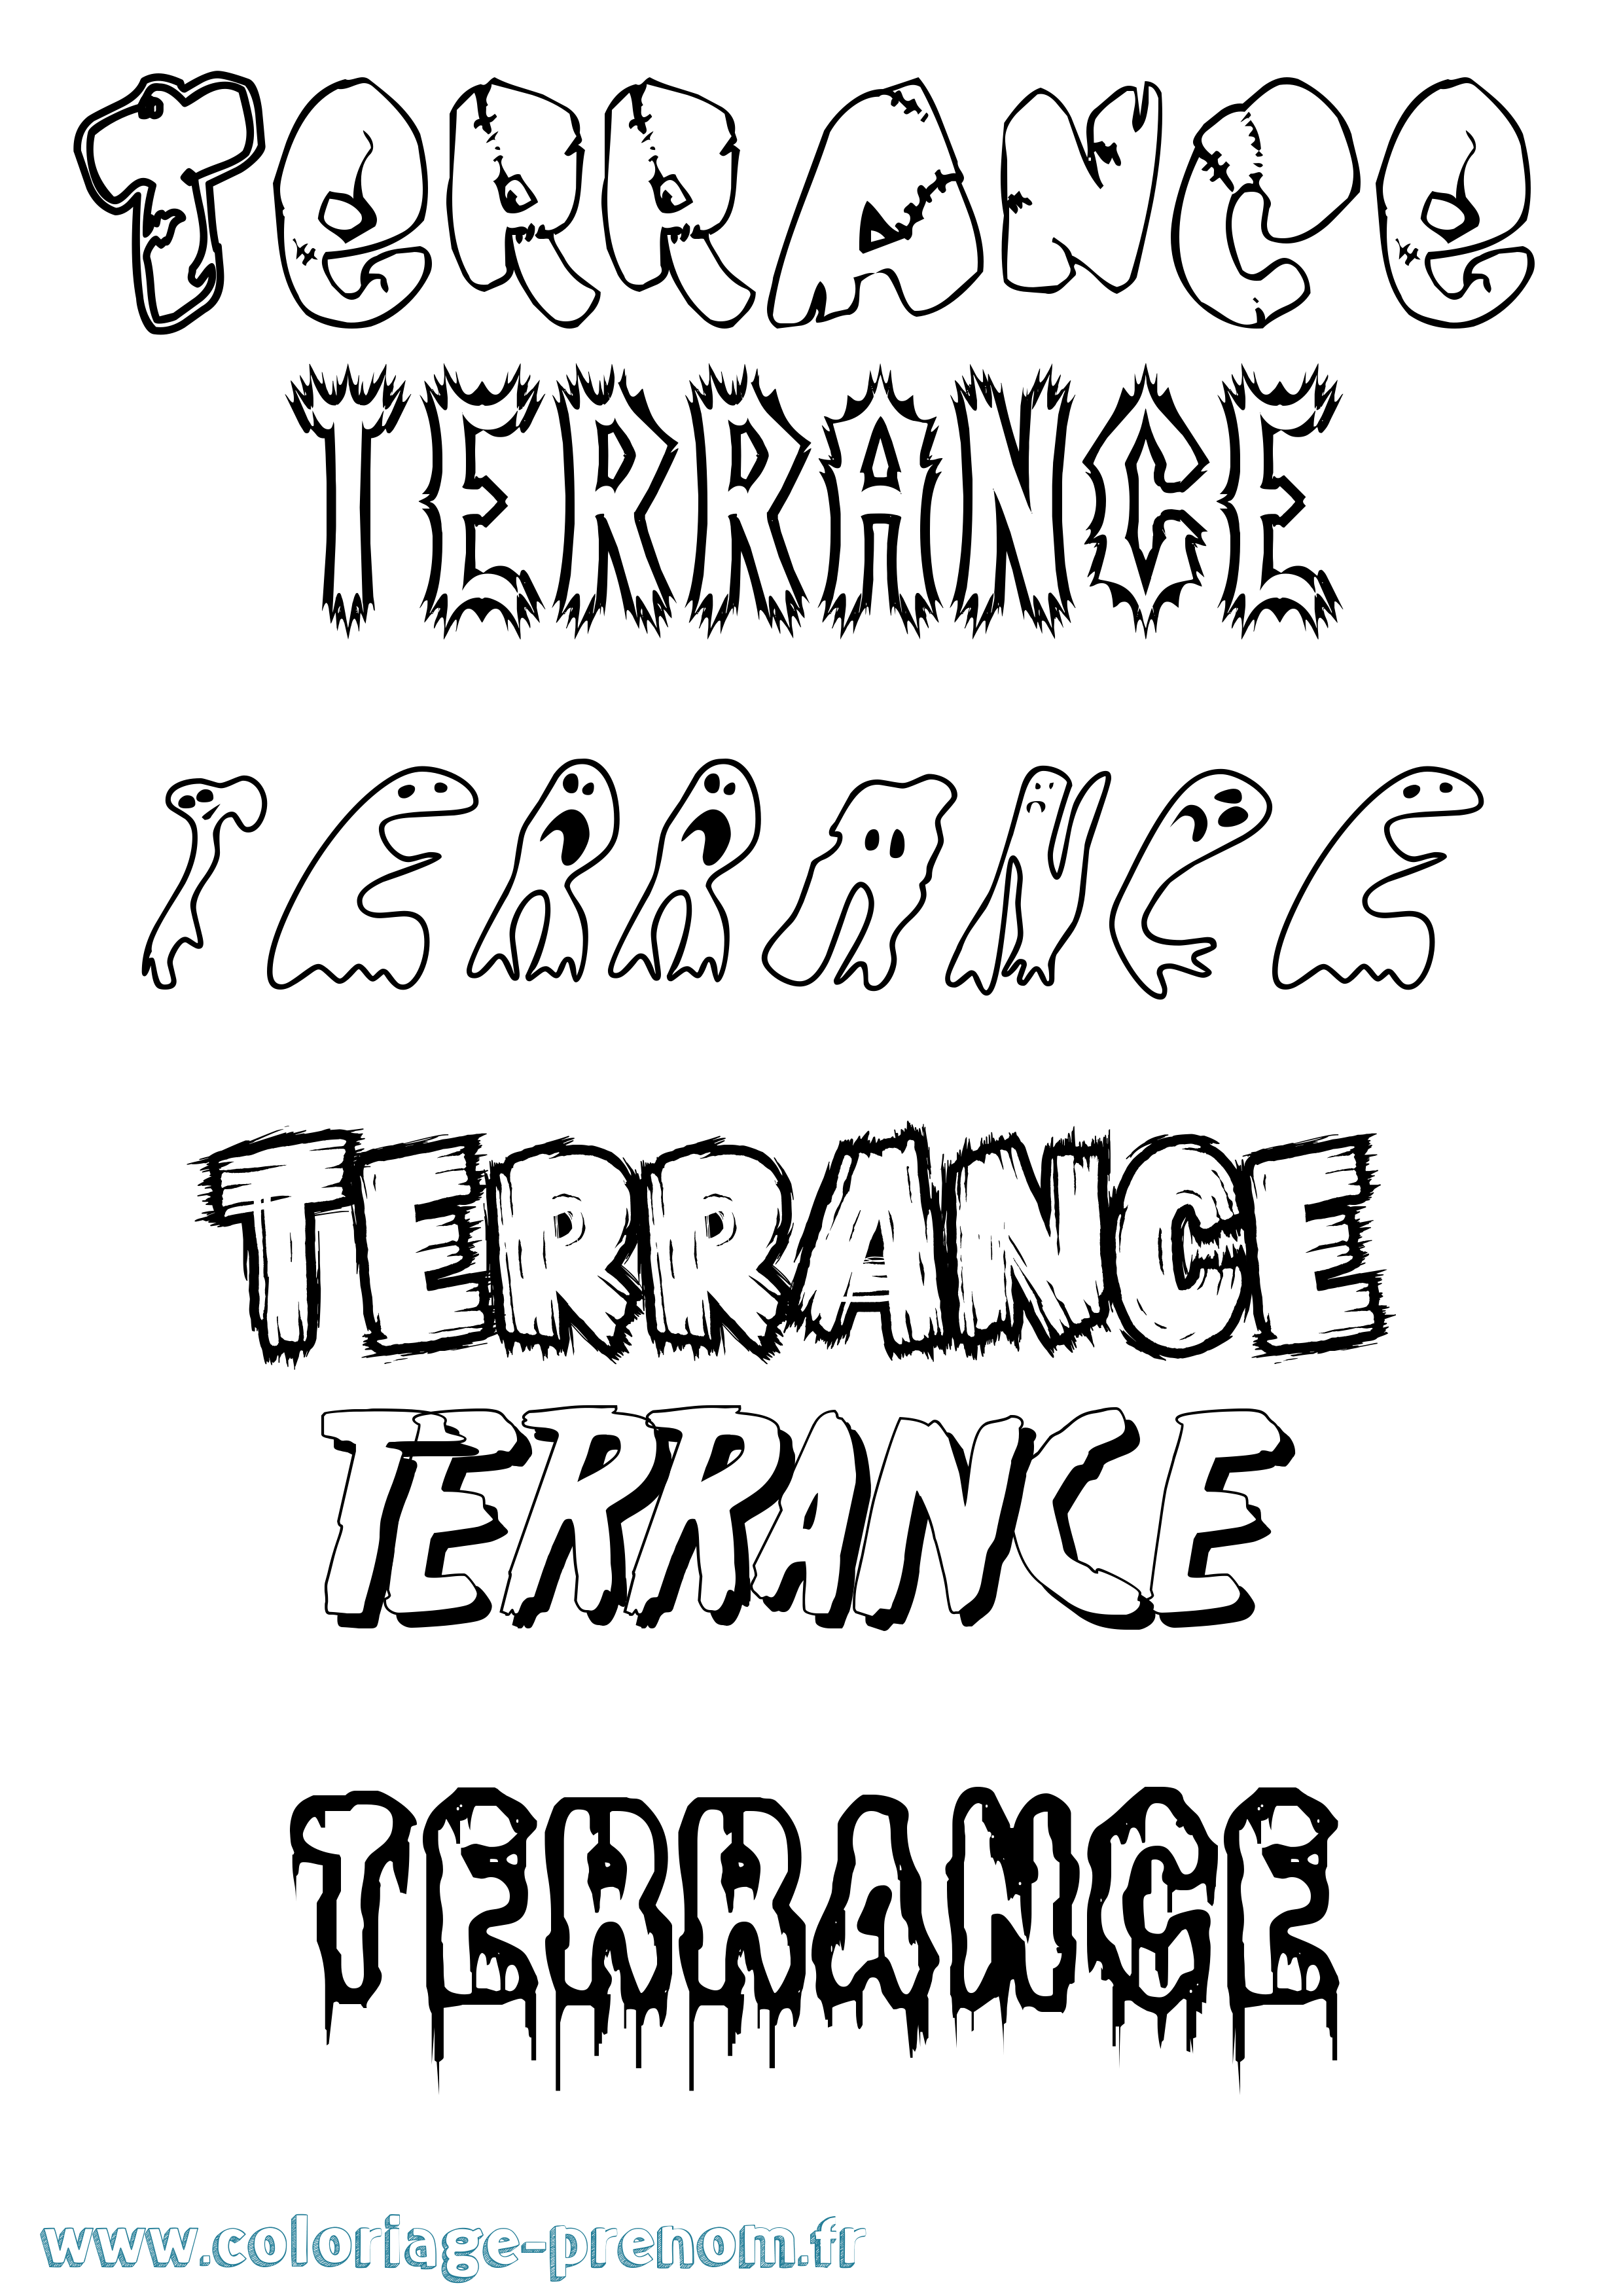 Coloriage prénom Terrance Frisson